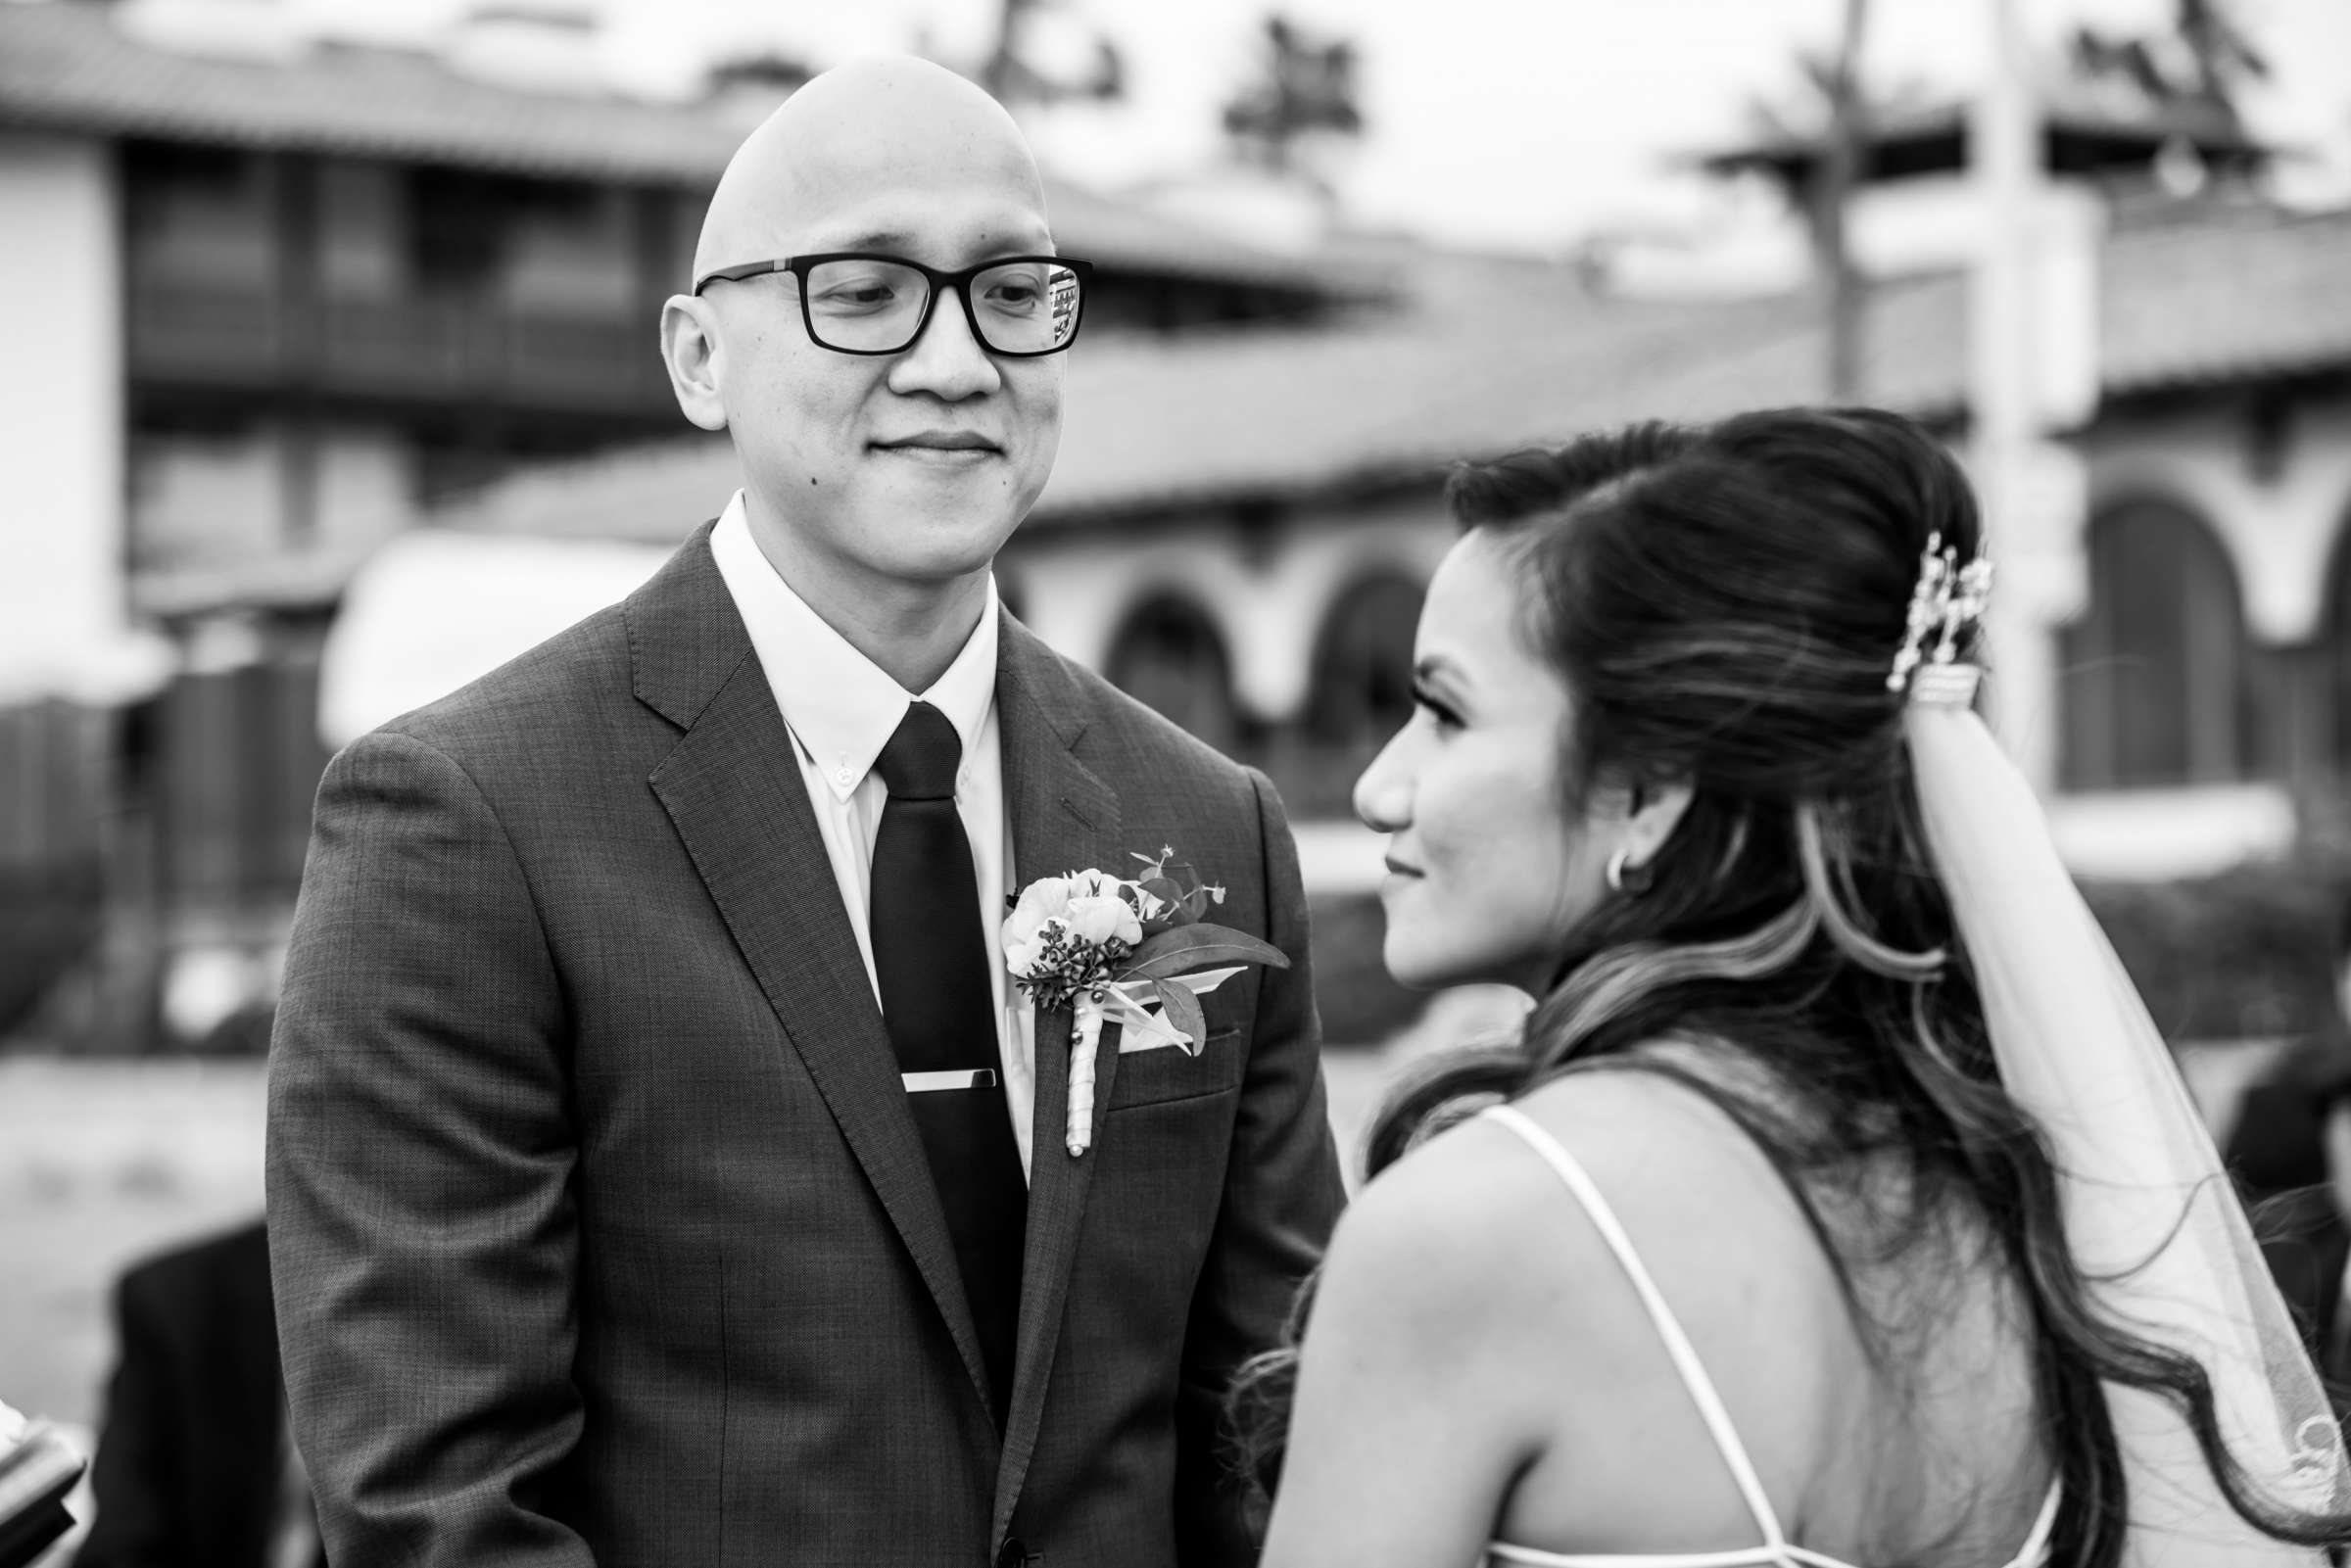 La Jolla Shores Hotel Wedding, Kim and Evan Wedding Photo #15 by True Photography